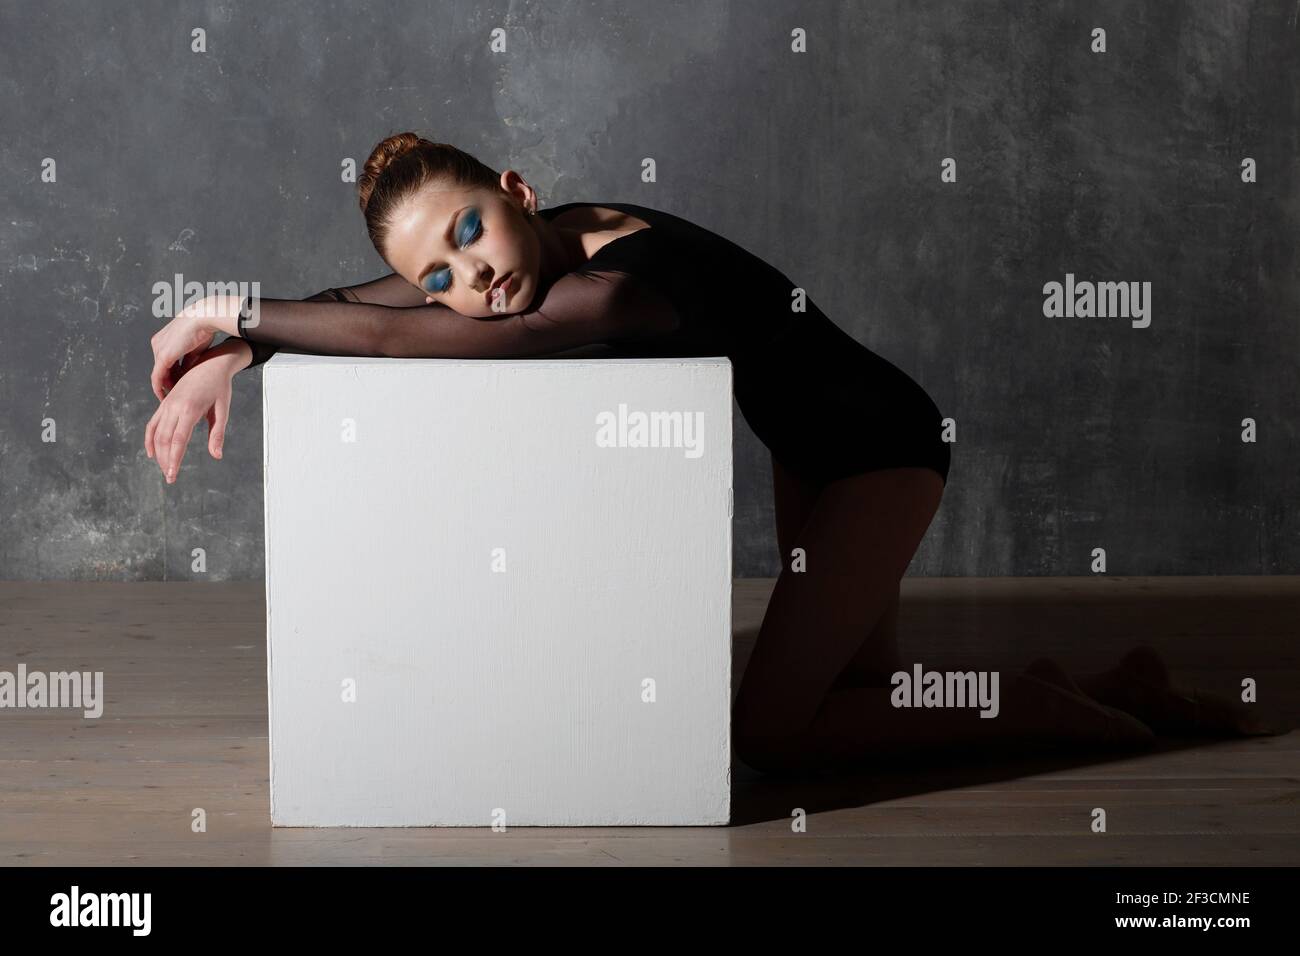 Jeune femme gymnaste professionnelle se reposant sur un cube blanc après l'entraînement. Concept de gymnastique rythmique Banque D'Images